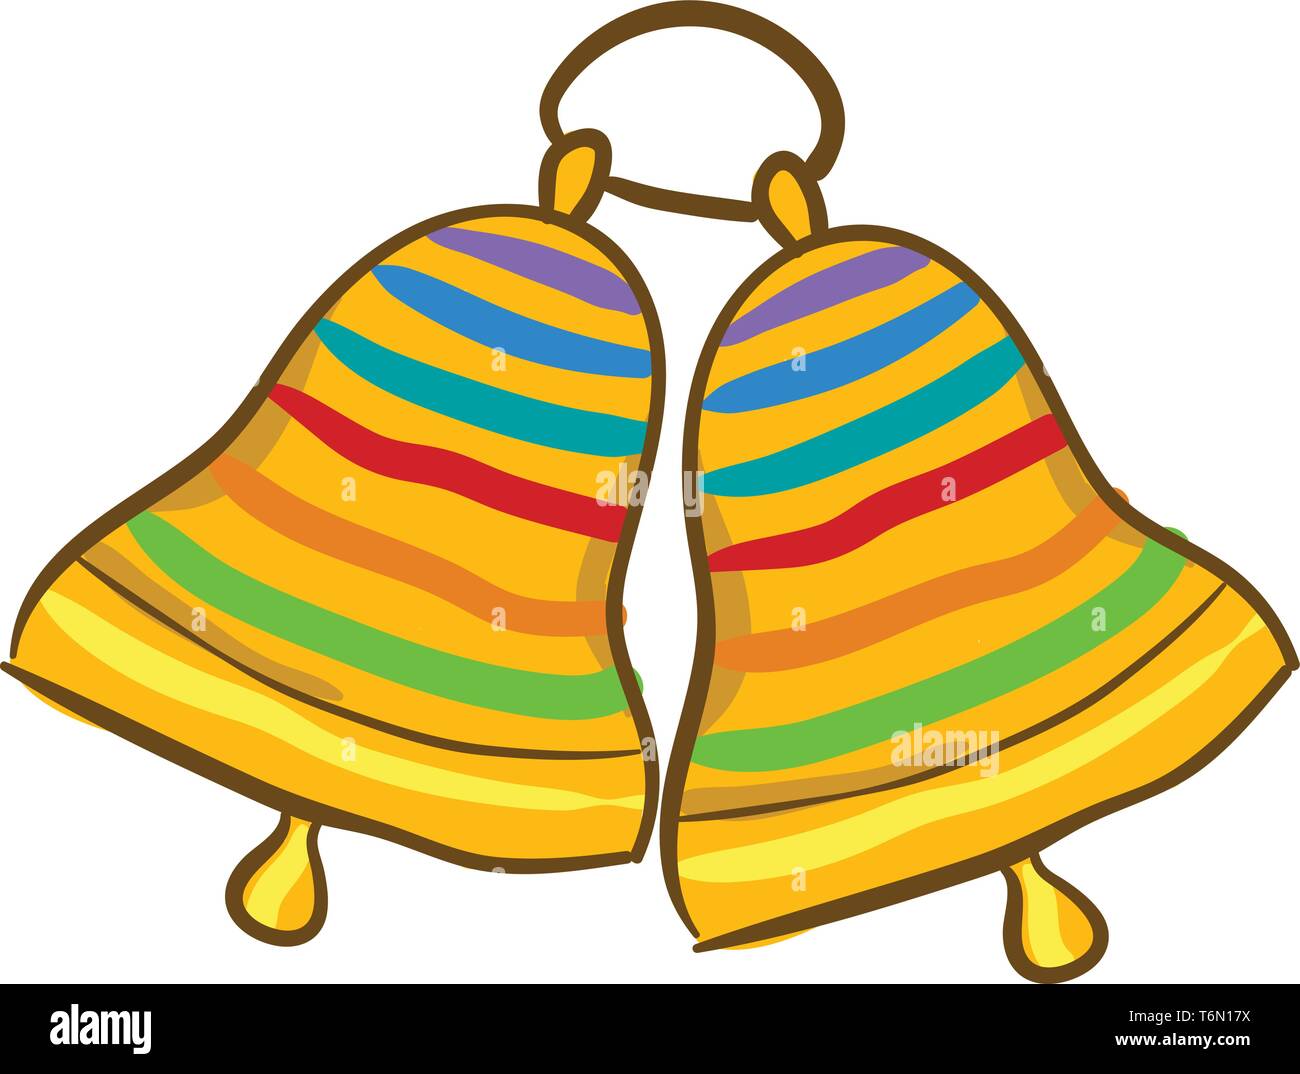 La pittura di due squillo campanelli dorati con multi-bande colorate design appeso insieme e sono sullo stesso anello metallico del vettore di disegno a colori o illustr Illustrazione Vettoriale